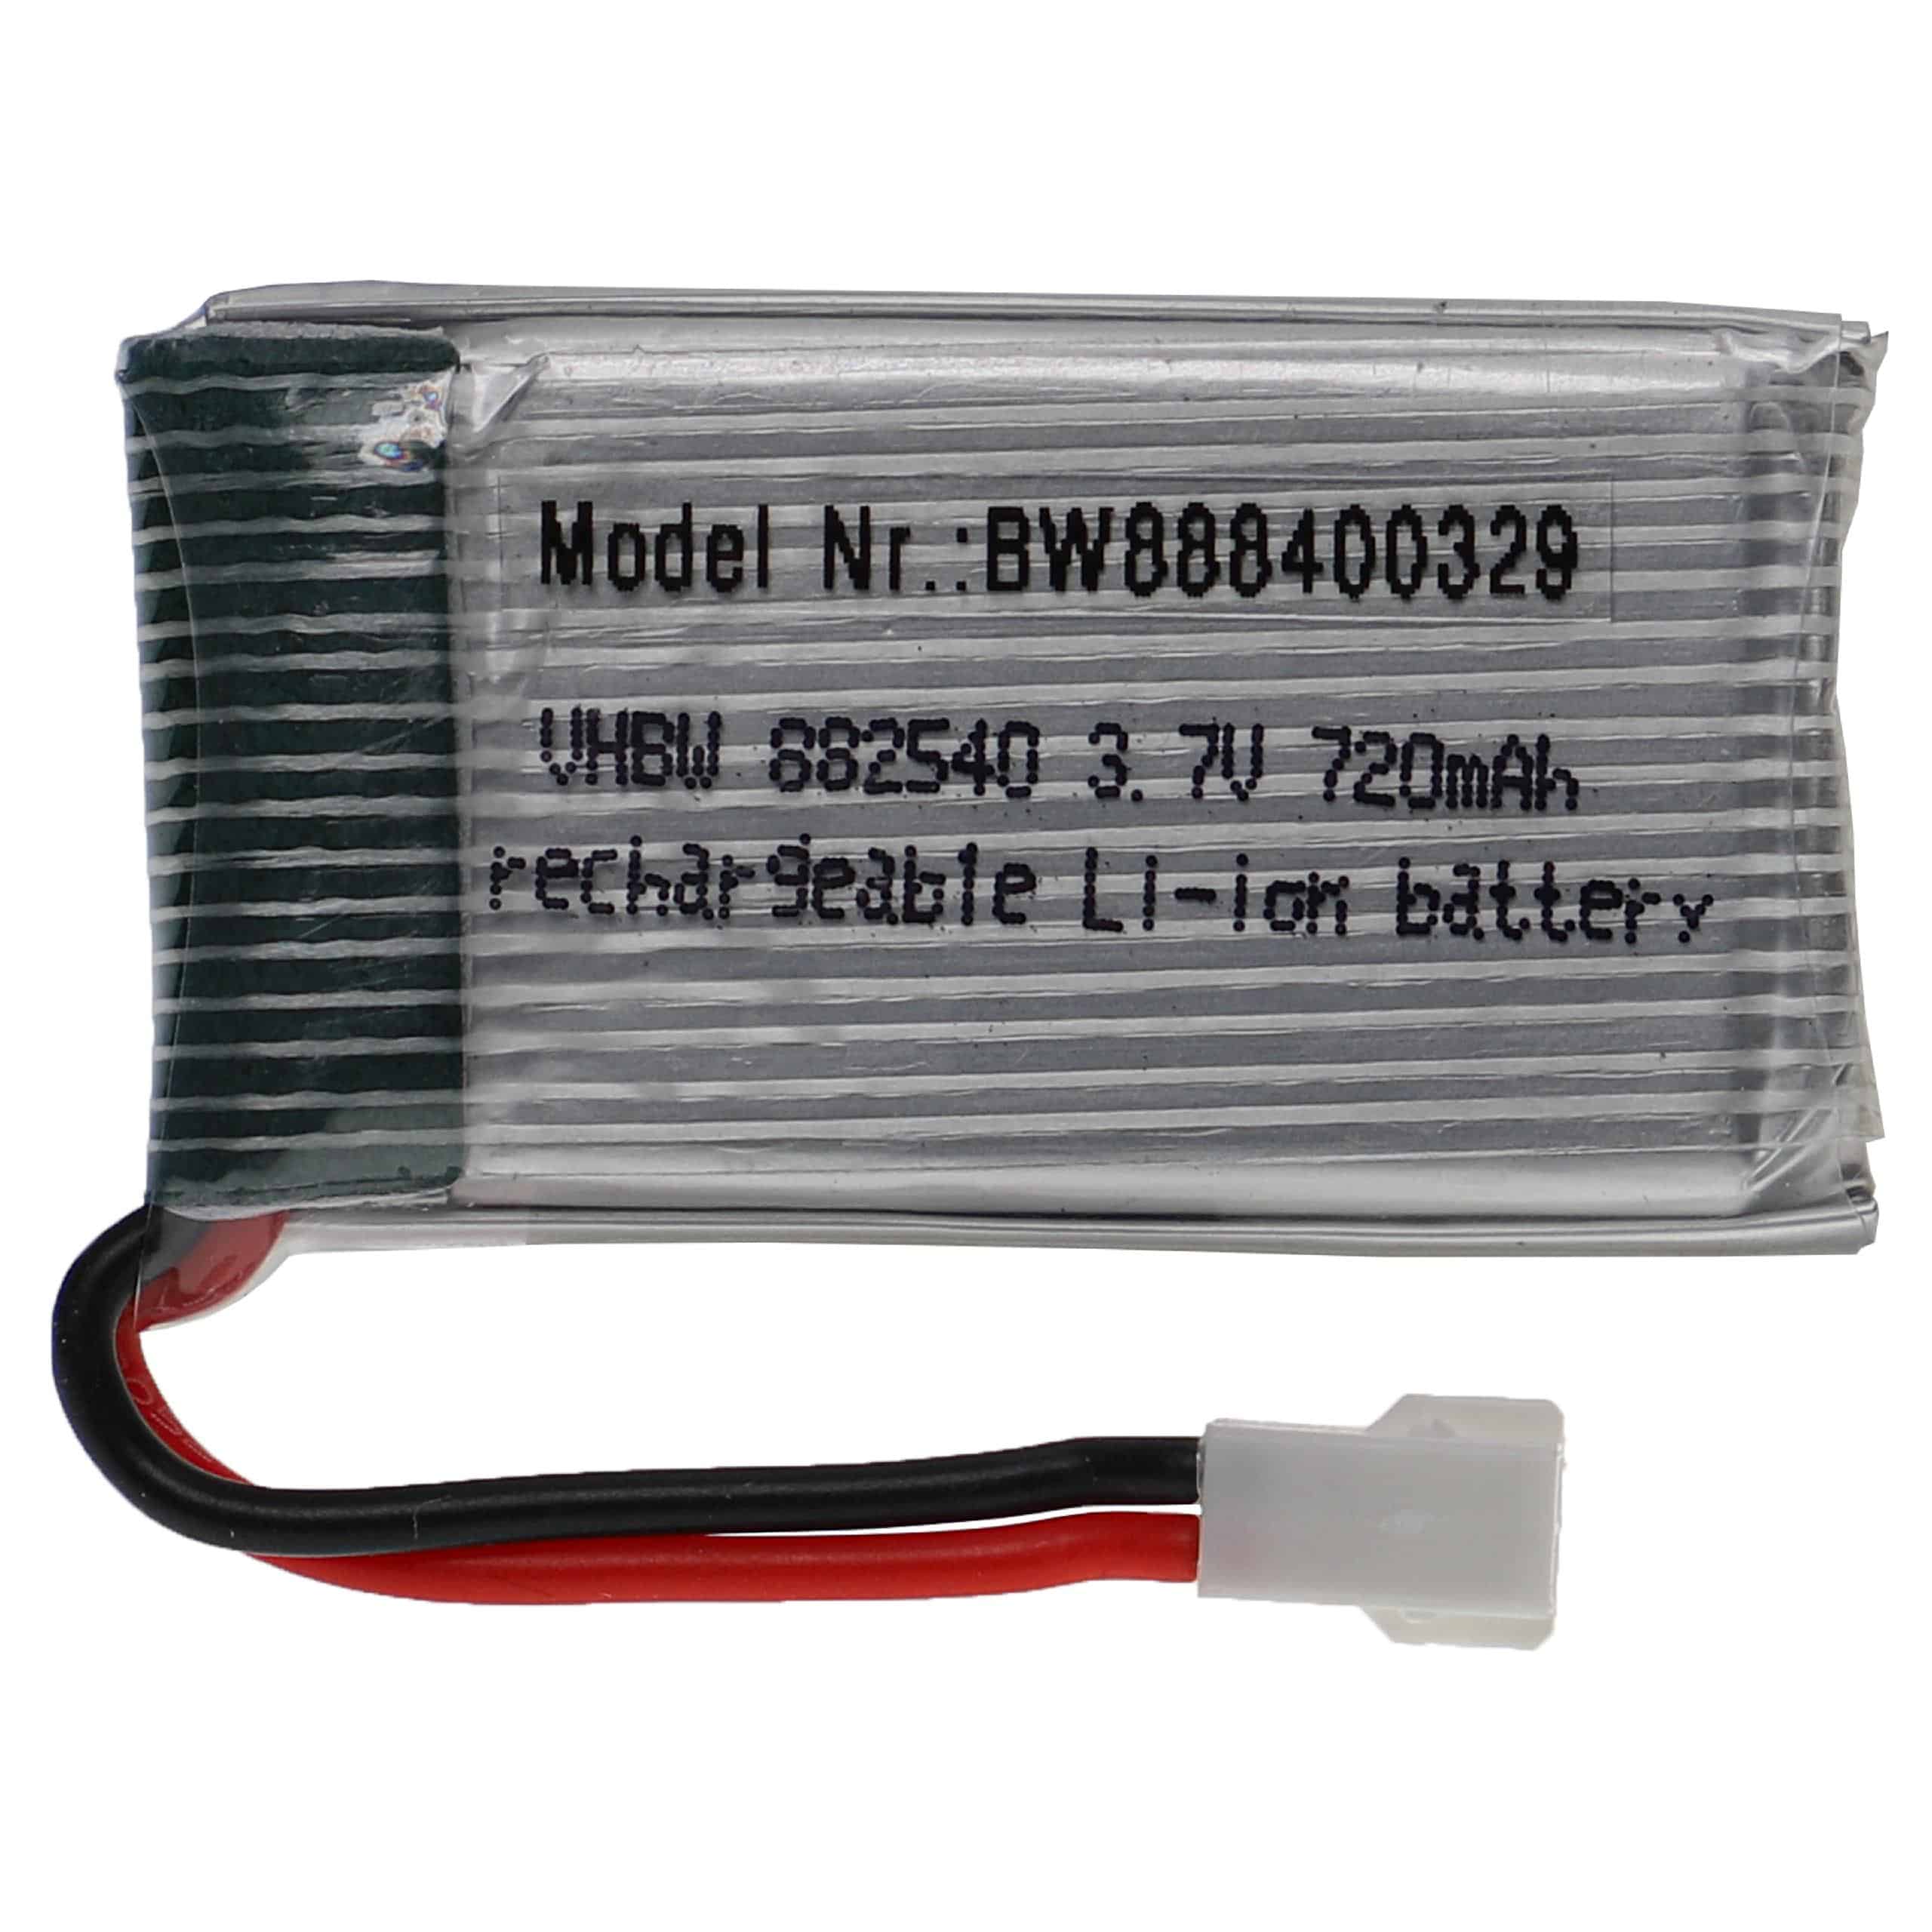 Batterie pour modèle radio-télécommandé - 720mAh 3,7V Li-polymère, XH 2.54 2P